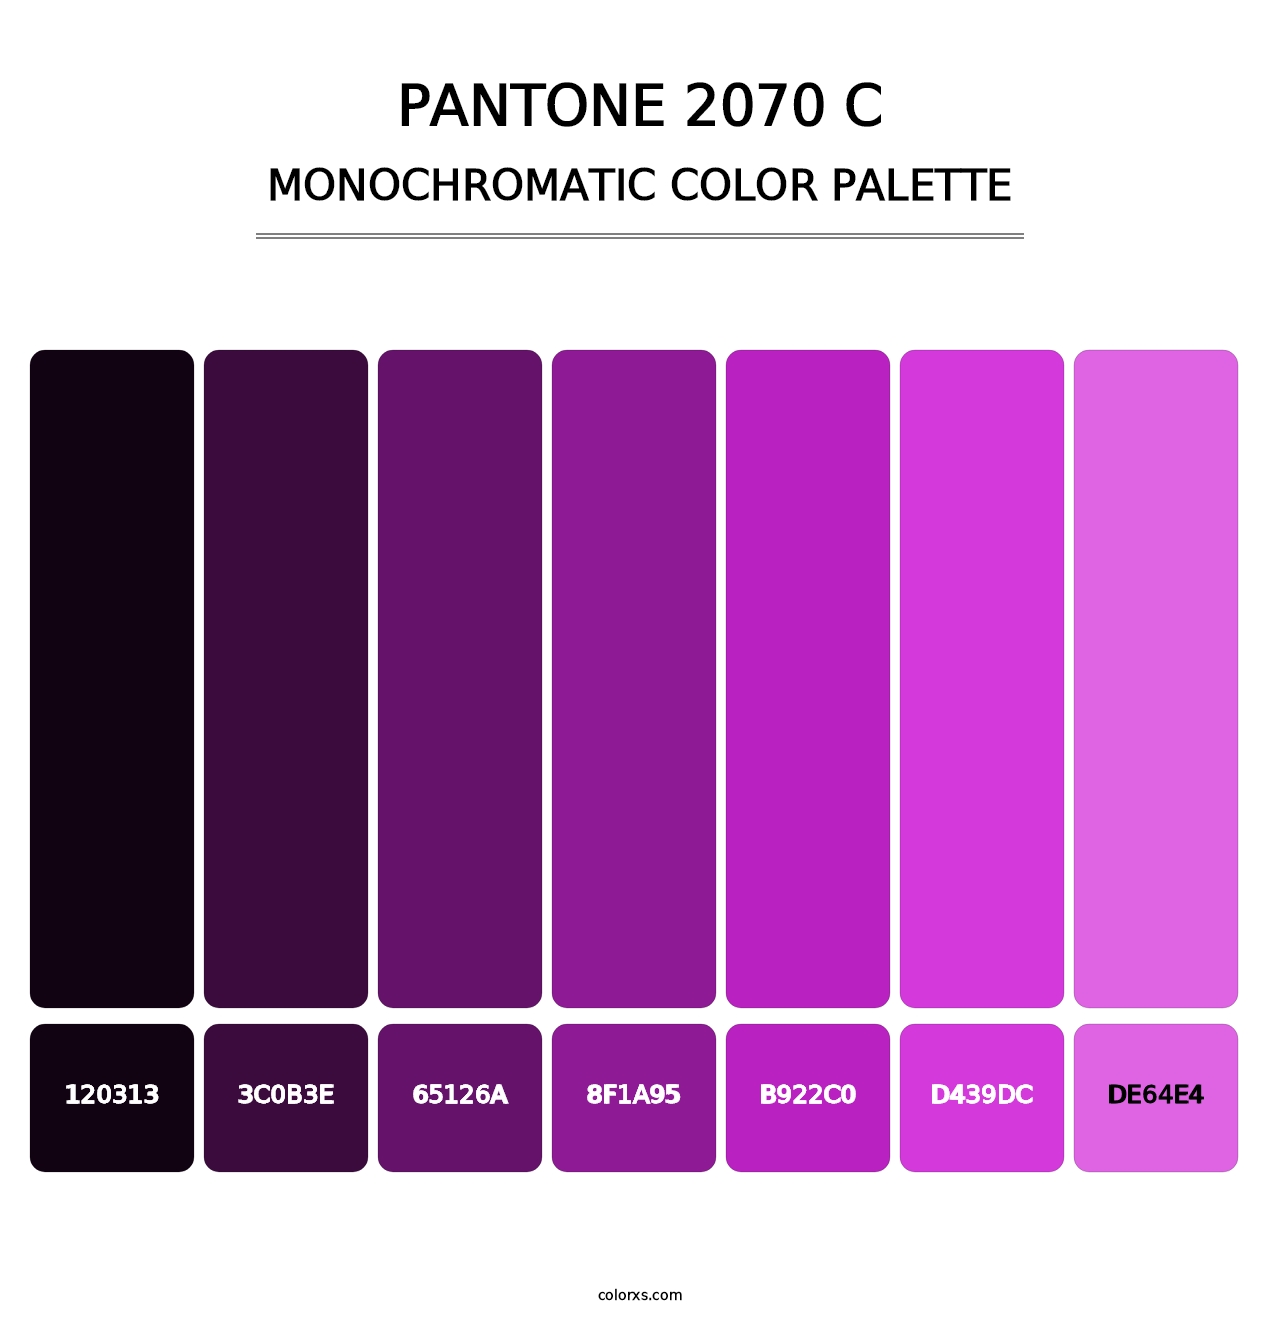 PANTONE 2070 C - Monochromatic Color Palette